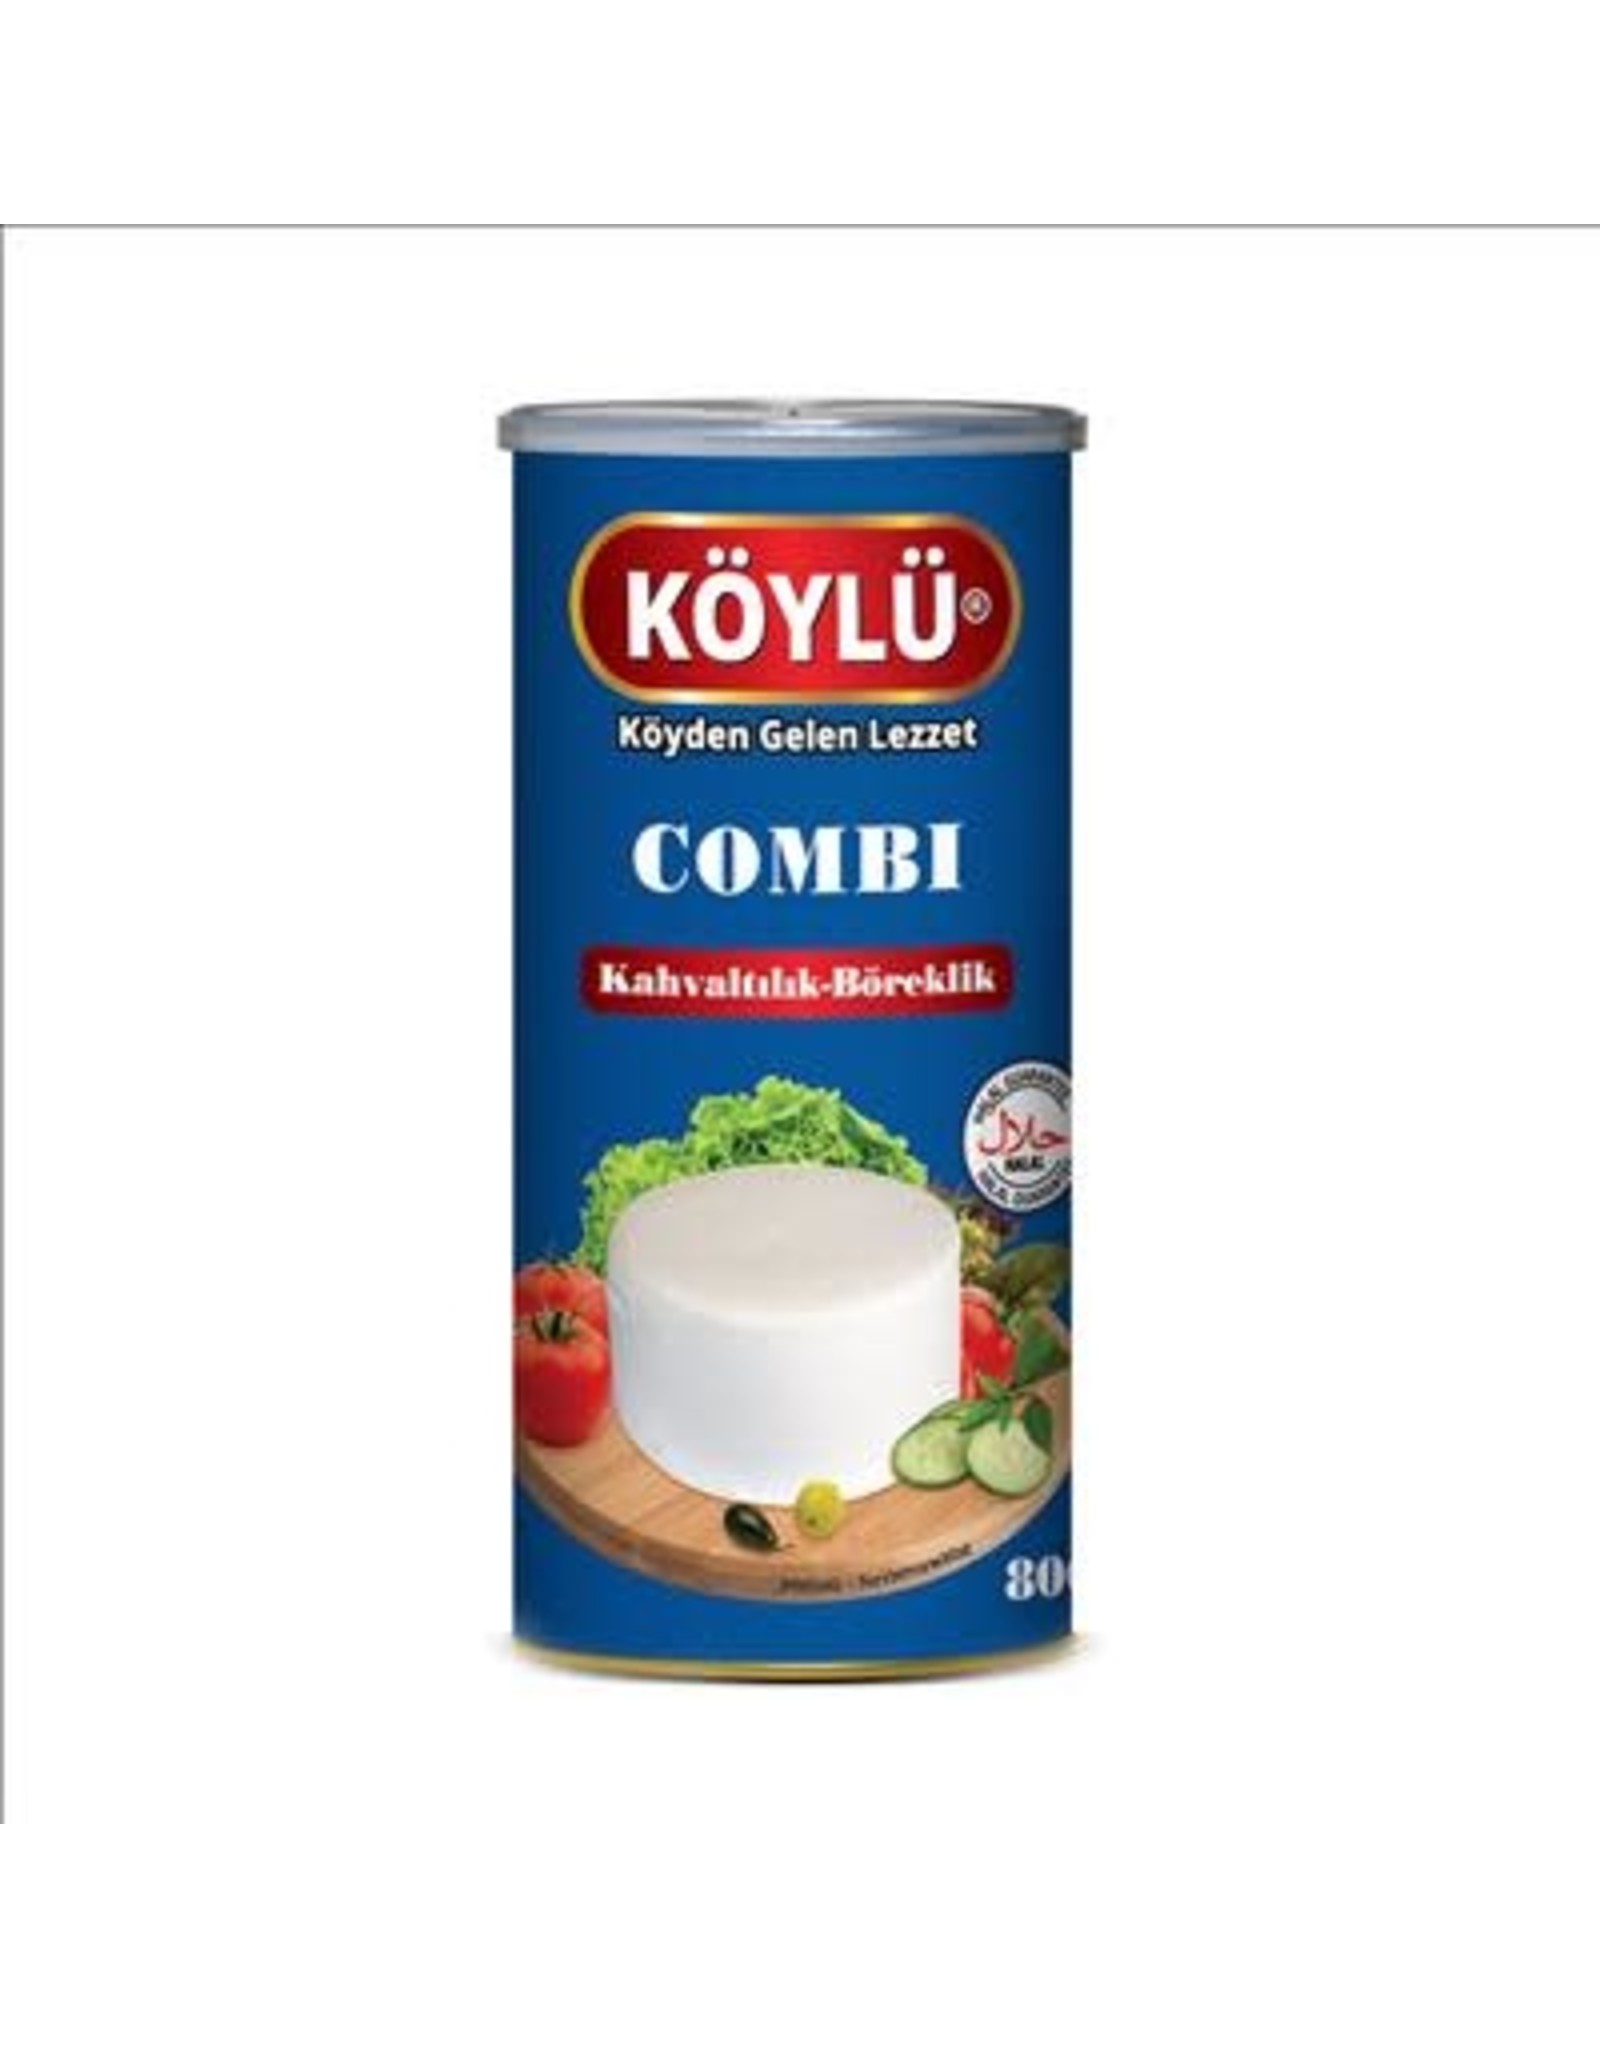 KOYLU COMBI 800GR